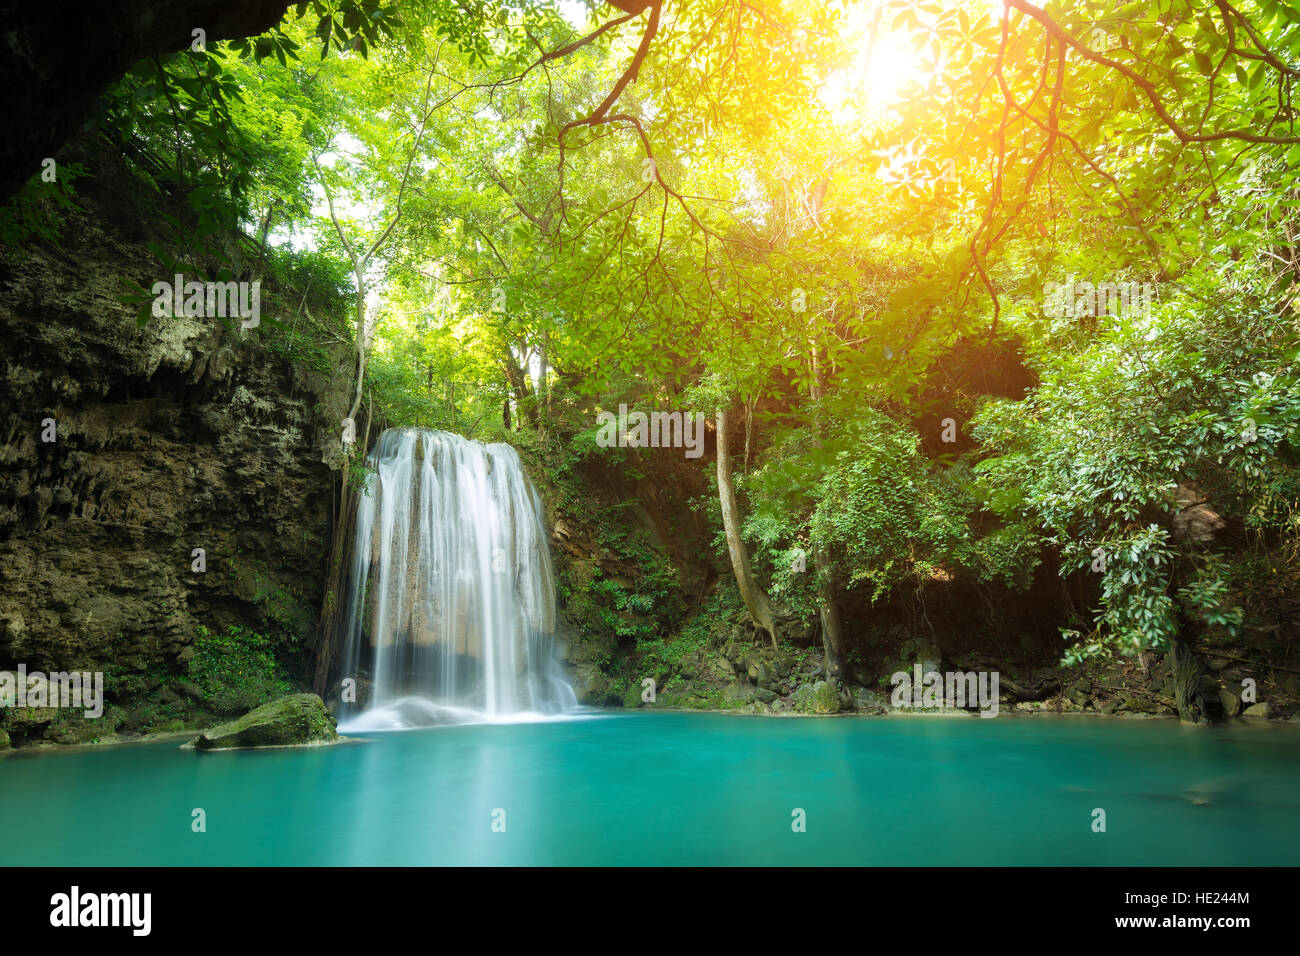 Erawan Wasserfall ist ein schöner Wasserfall im Frühlingswald in Provinz Kanchanaburi, Thailand. Stockfoto